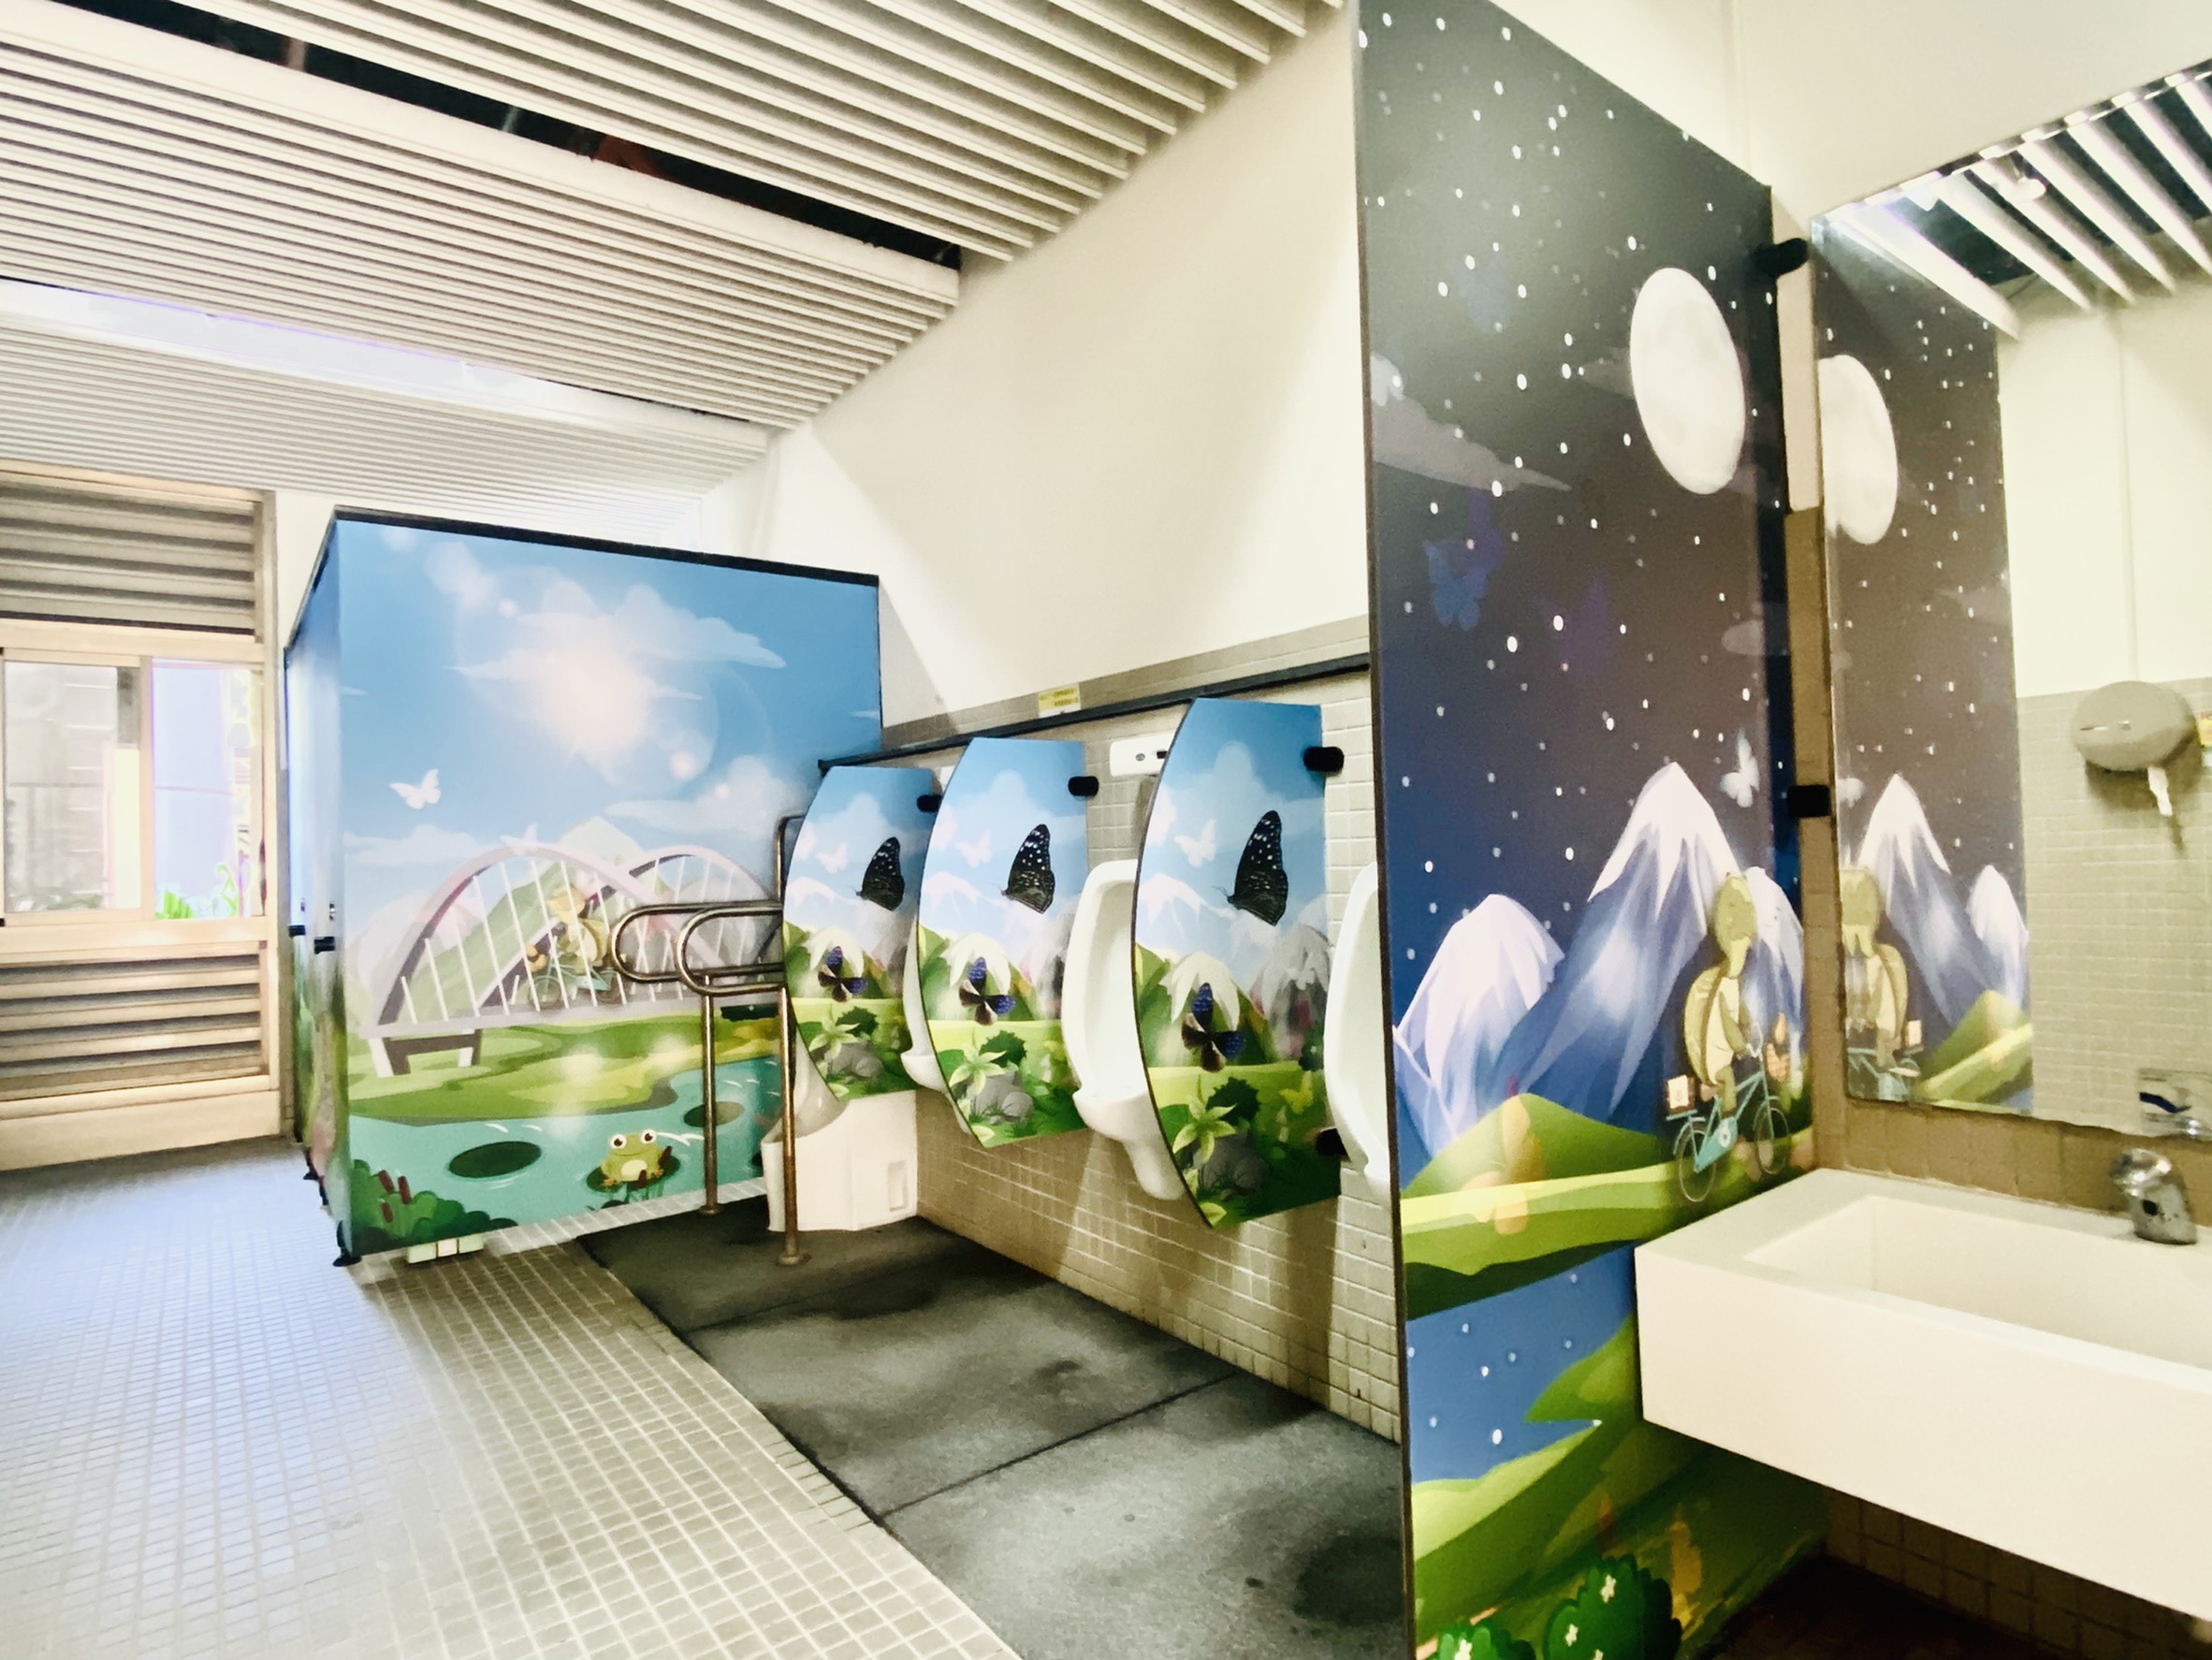 新威遊客中心以溫馨童趣的卡漫風圖像，將著名景點特色融入廁所門板設計。